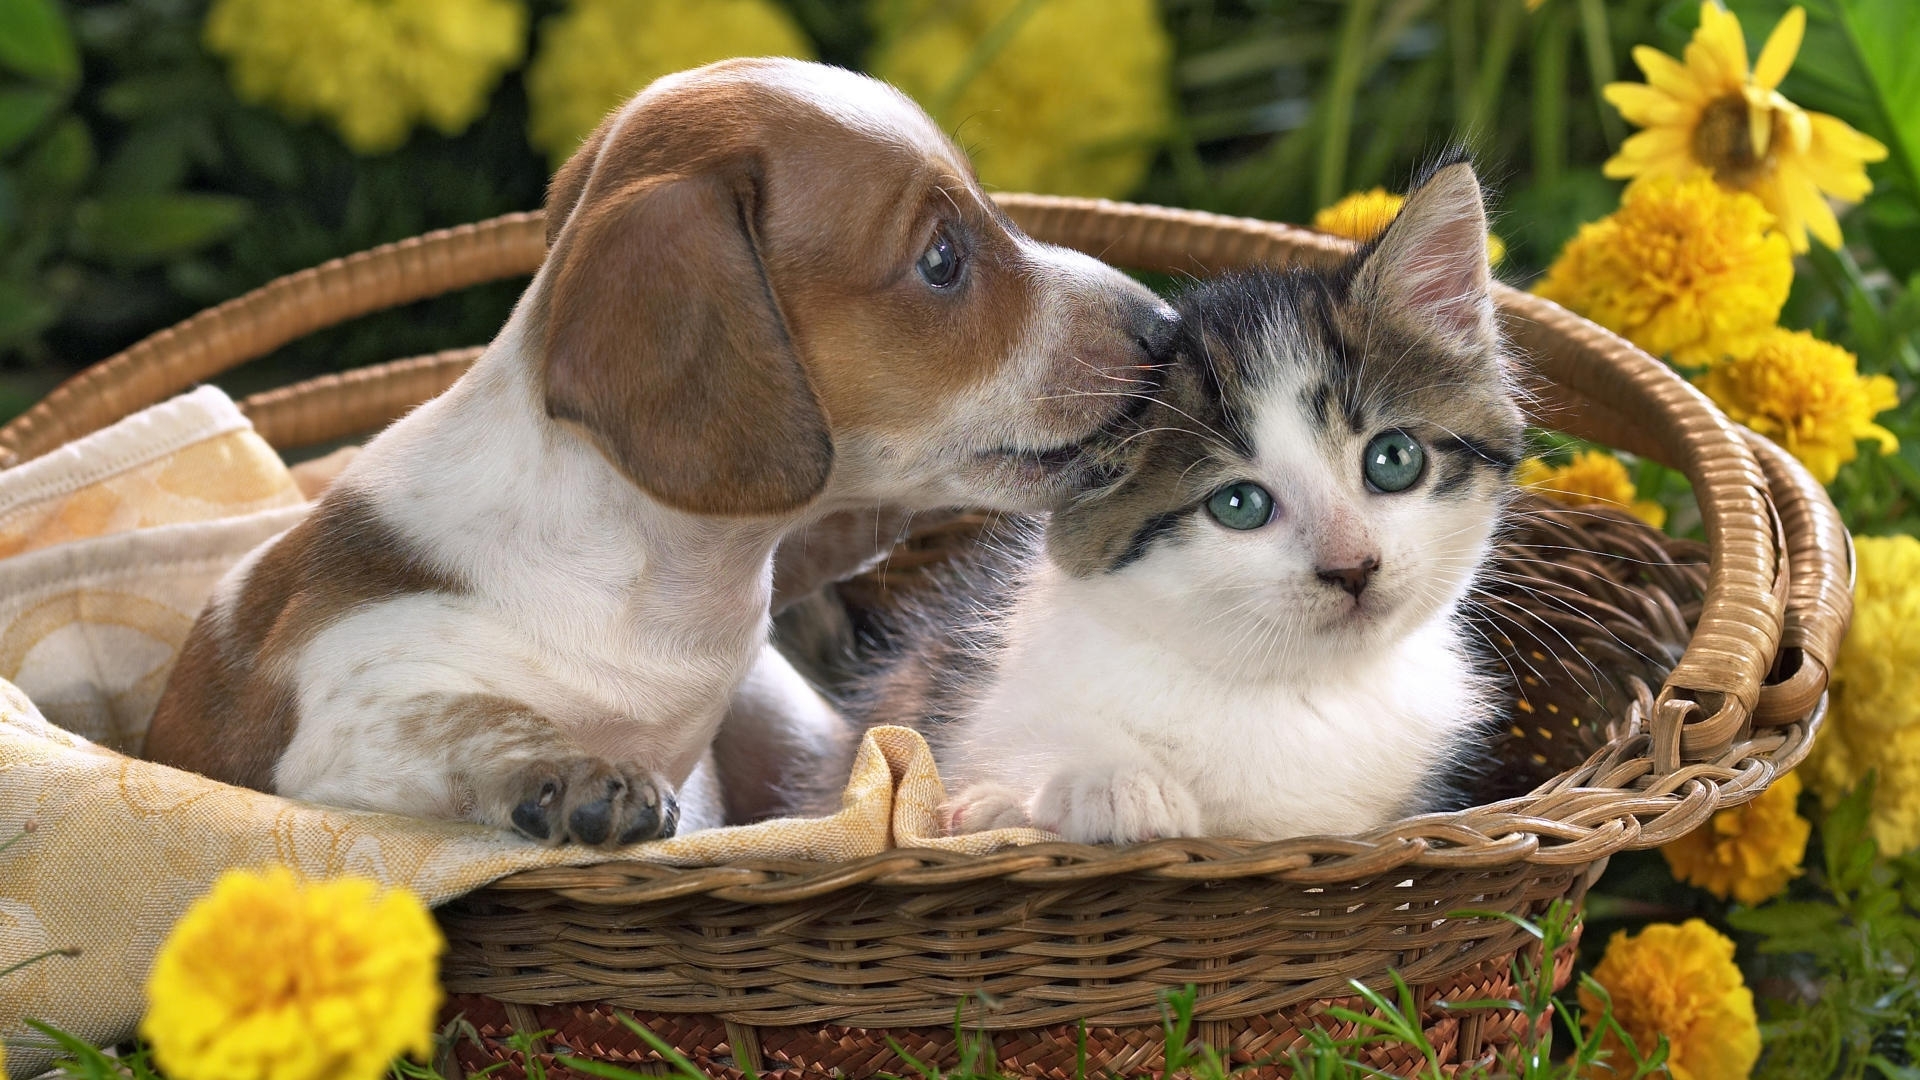 Скачать обои бесплатно Животные, Собаки, Кошки (Коты Котики) картинка на рабочий стол ПК